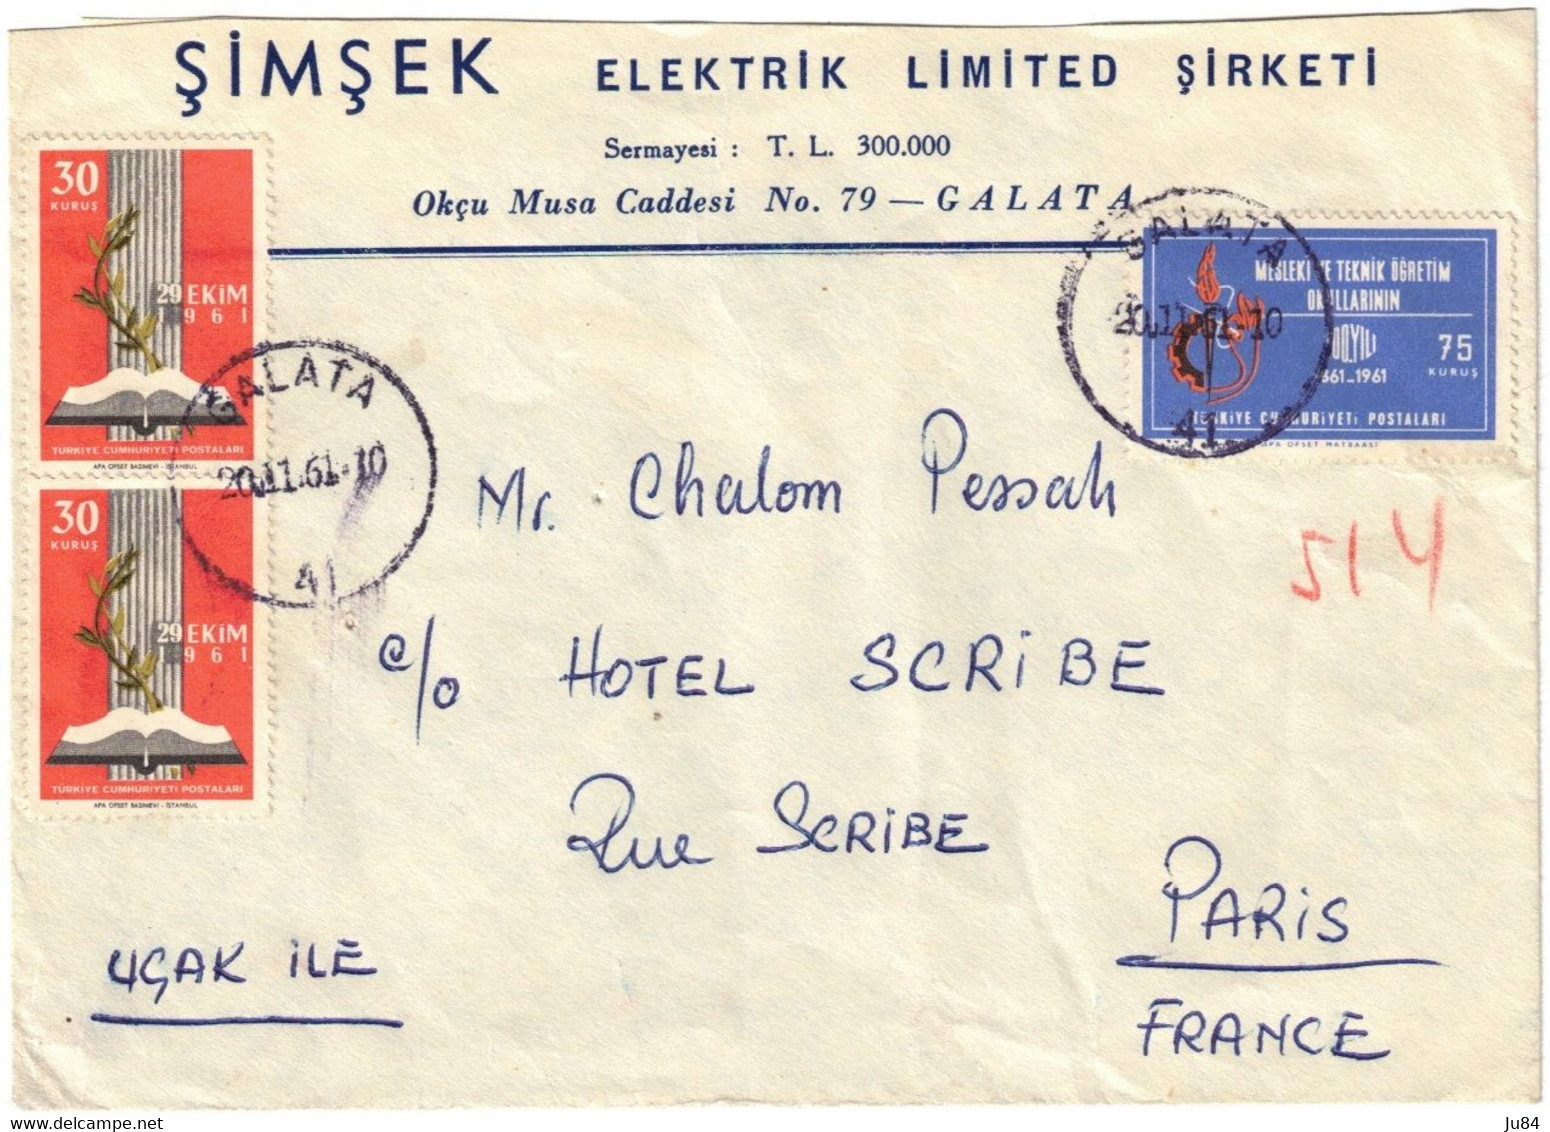 Turquie - Galata - Simsek Elektrik Limited Sirketi - Lettre Pour Hôtel Scribe Paris (France) - 20 Novembre 1961 - Covers & Documents